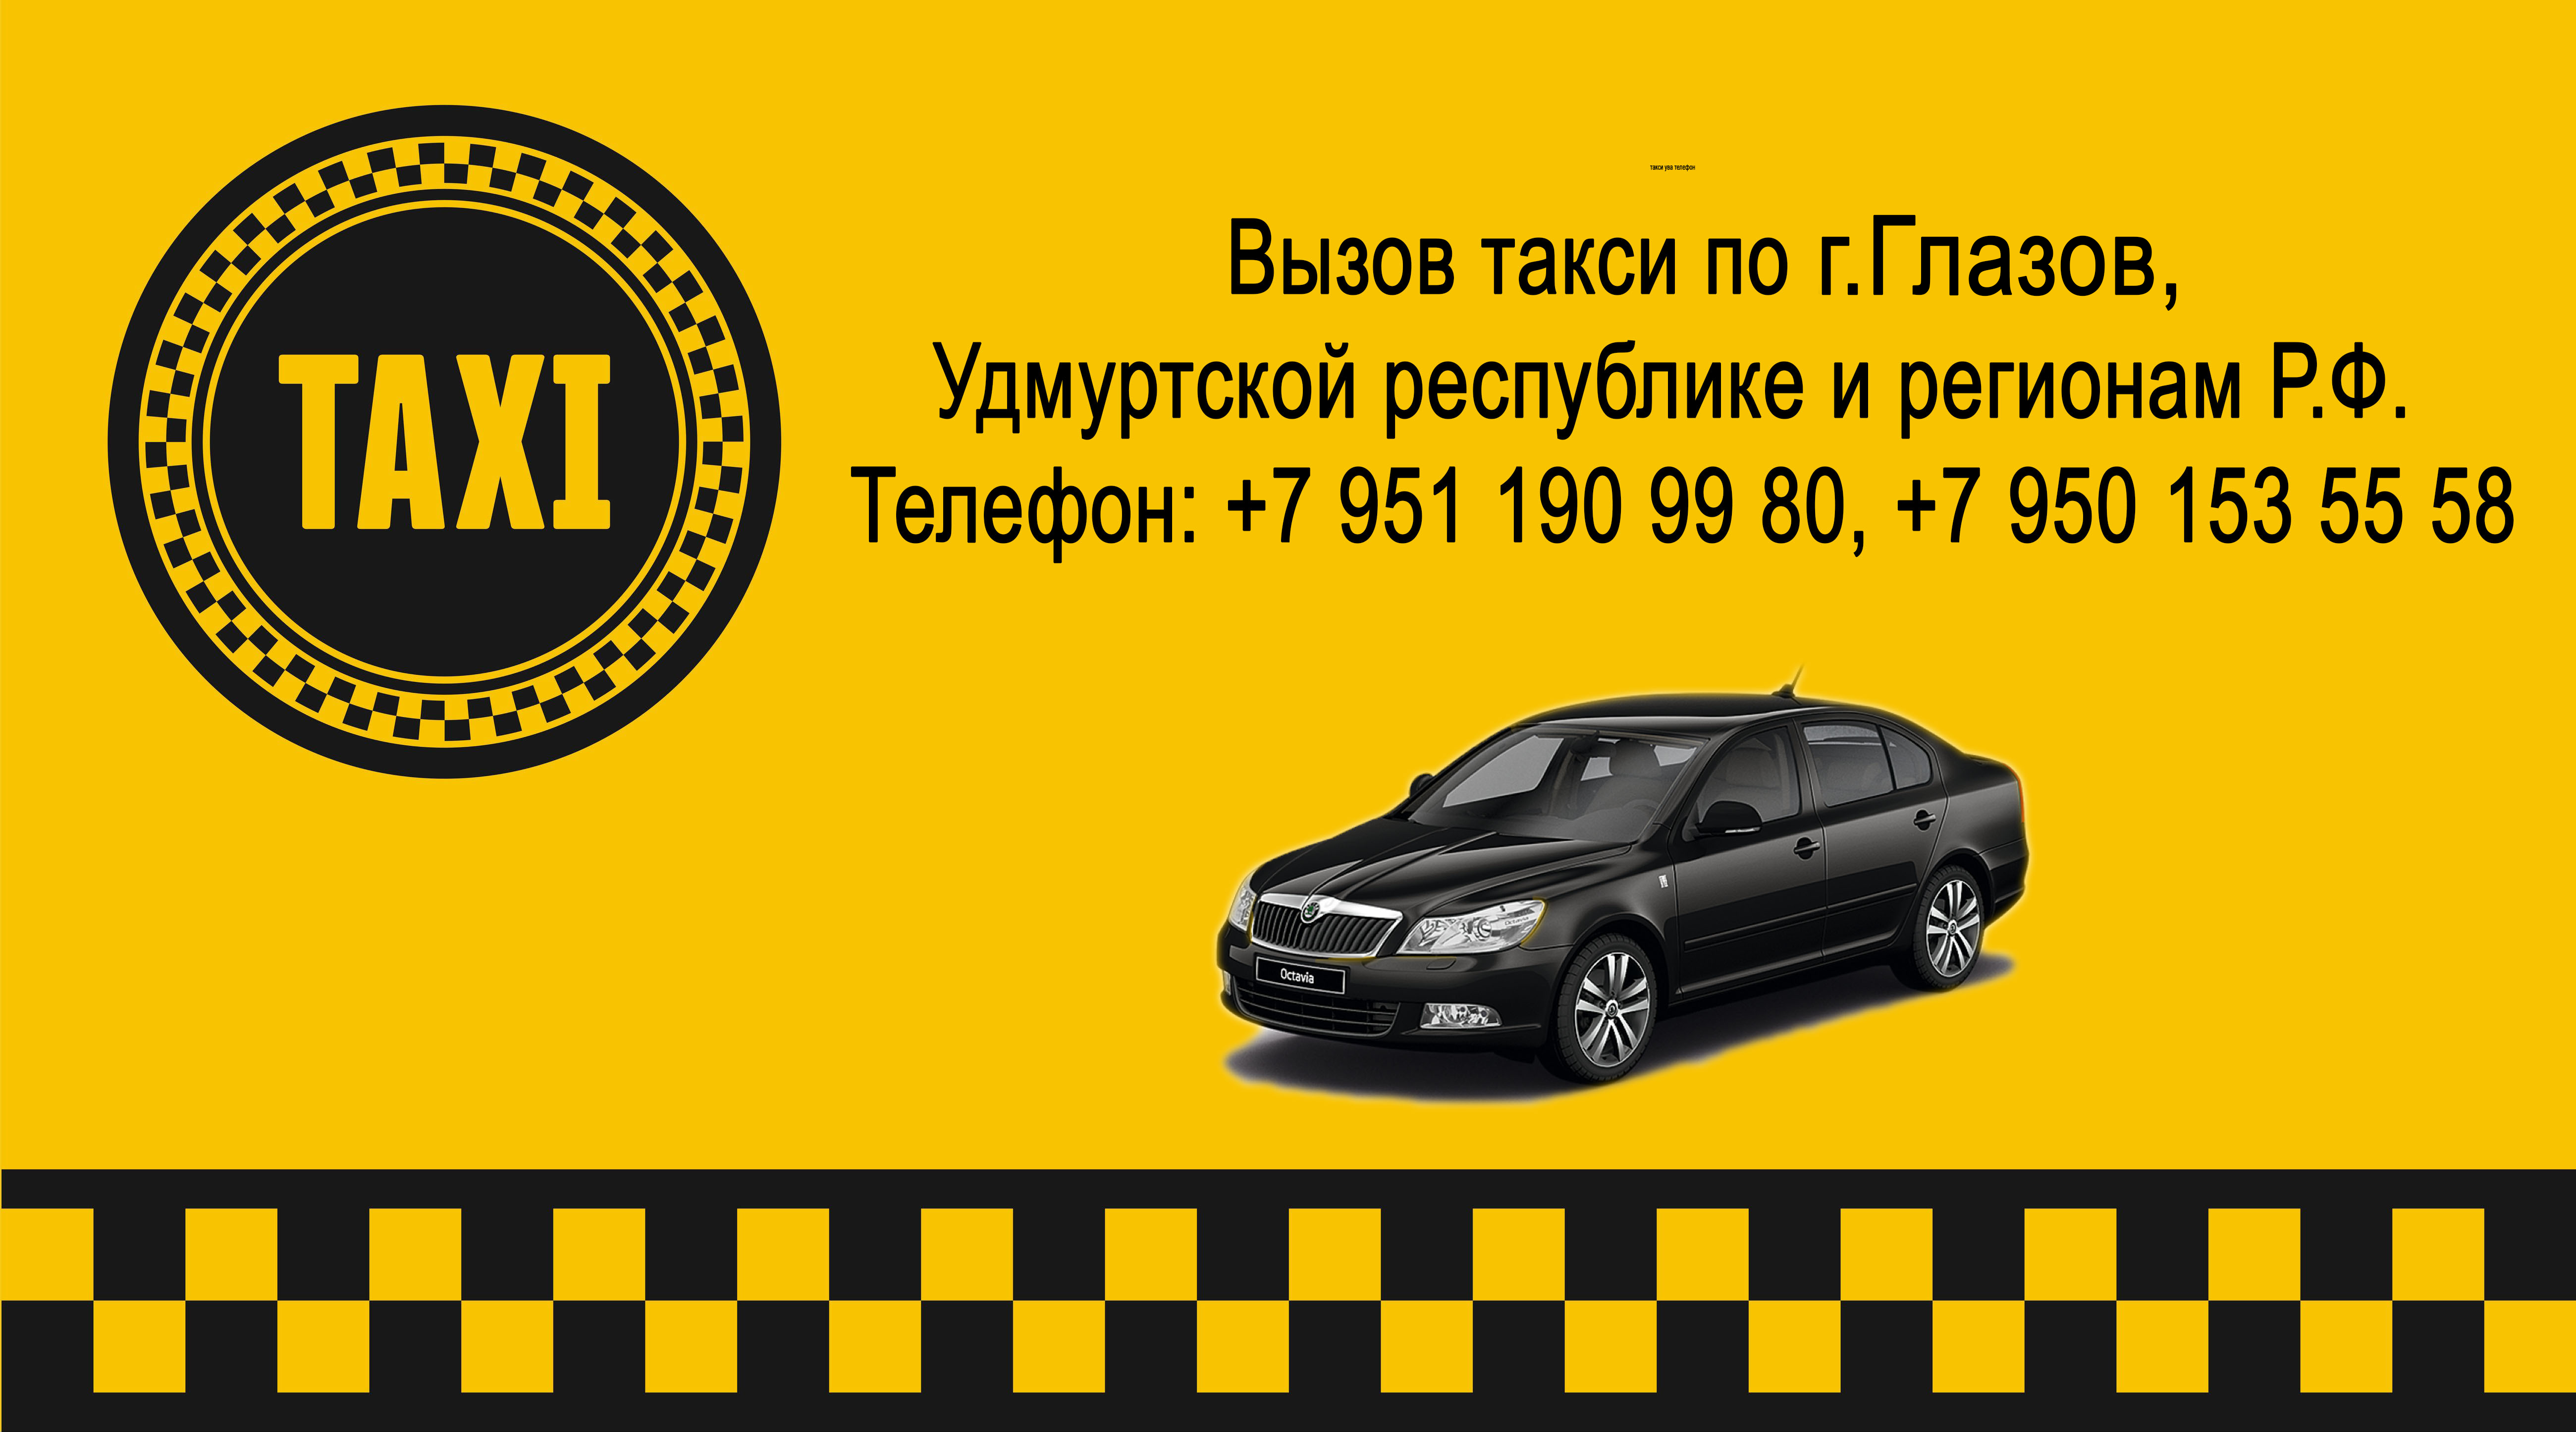 Такси михайловск ставропольский. Номер такси. Номера таксистов. Такси Ува. Такси номер такси.